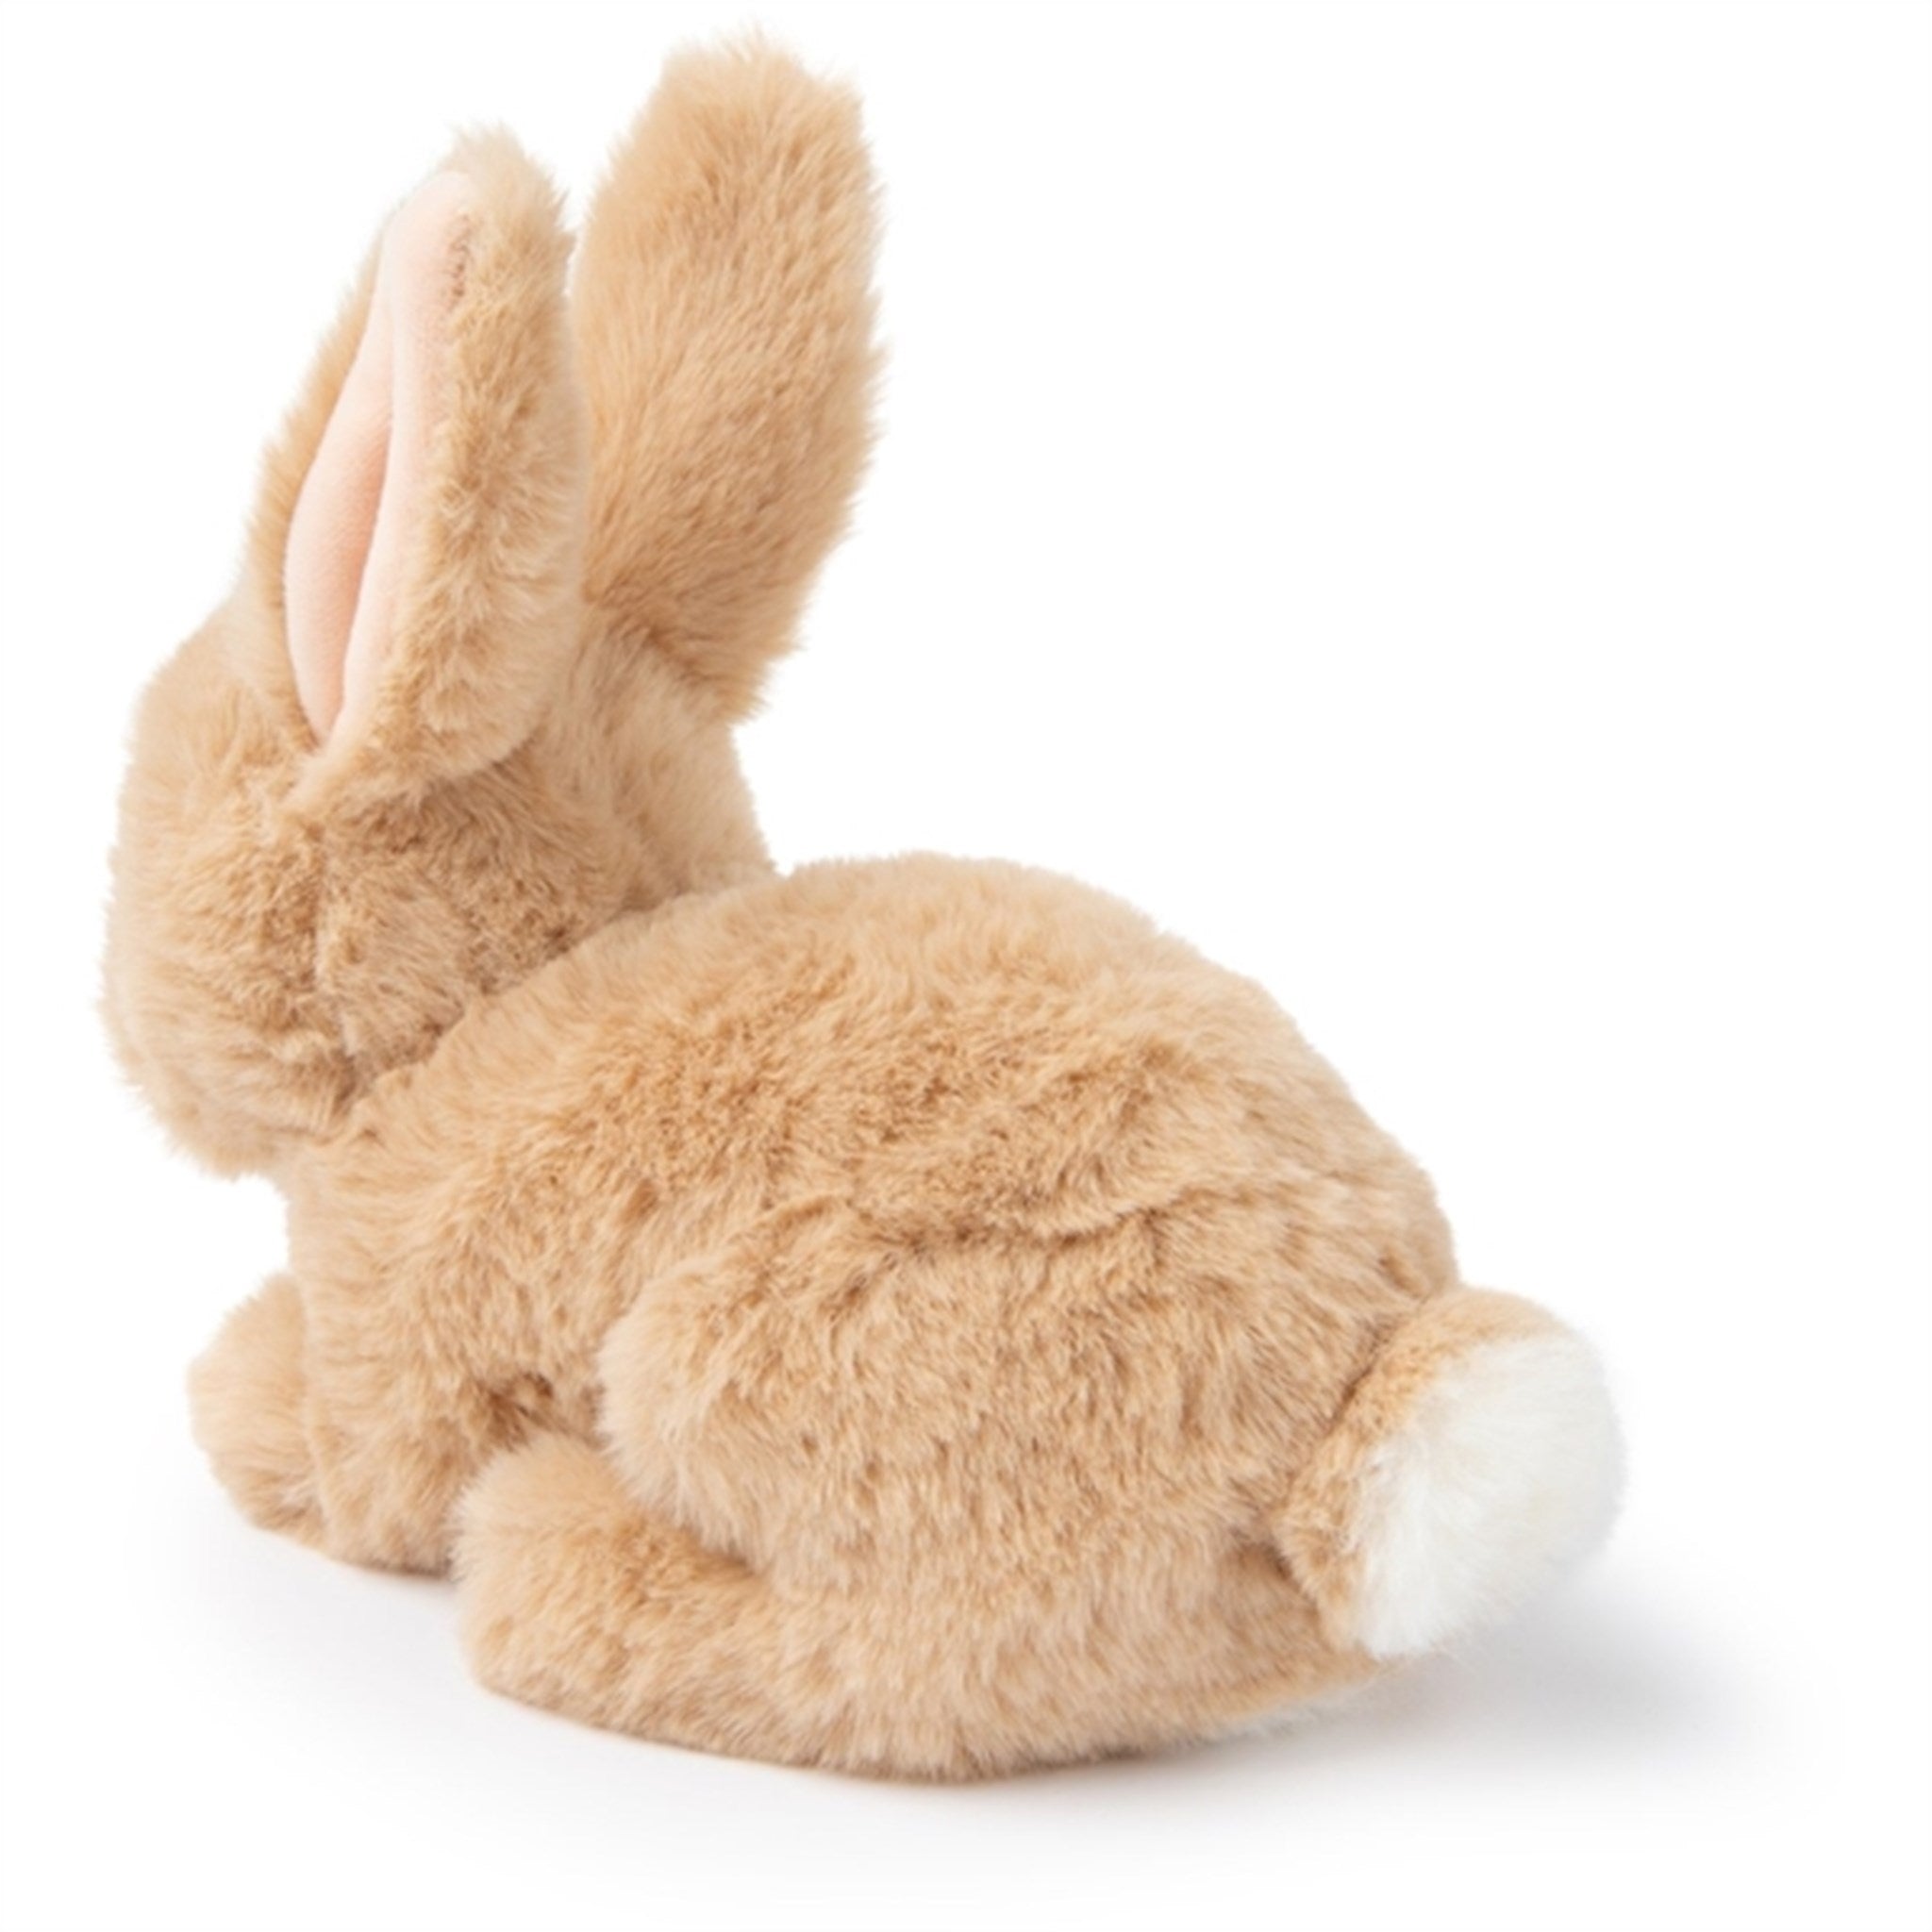 Bon Ton Toys WWF Plush ECO Rabbit Beige 15 cm 3